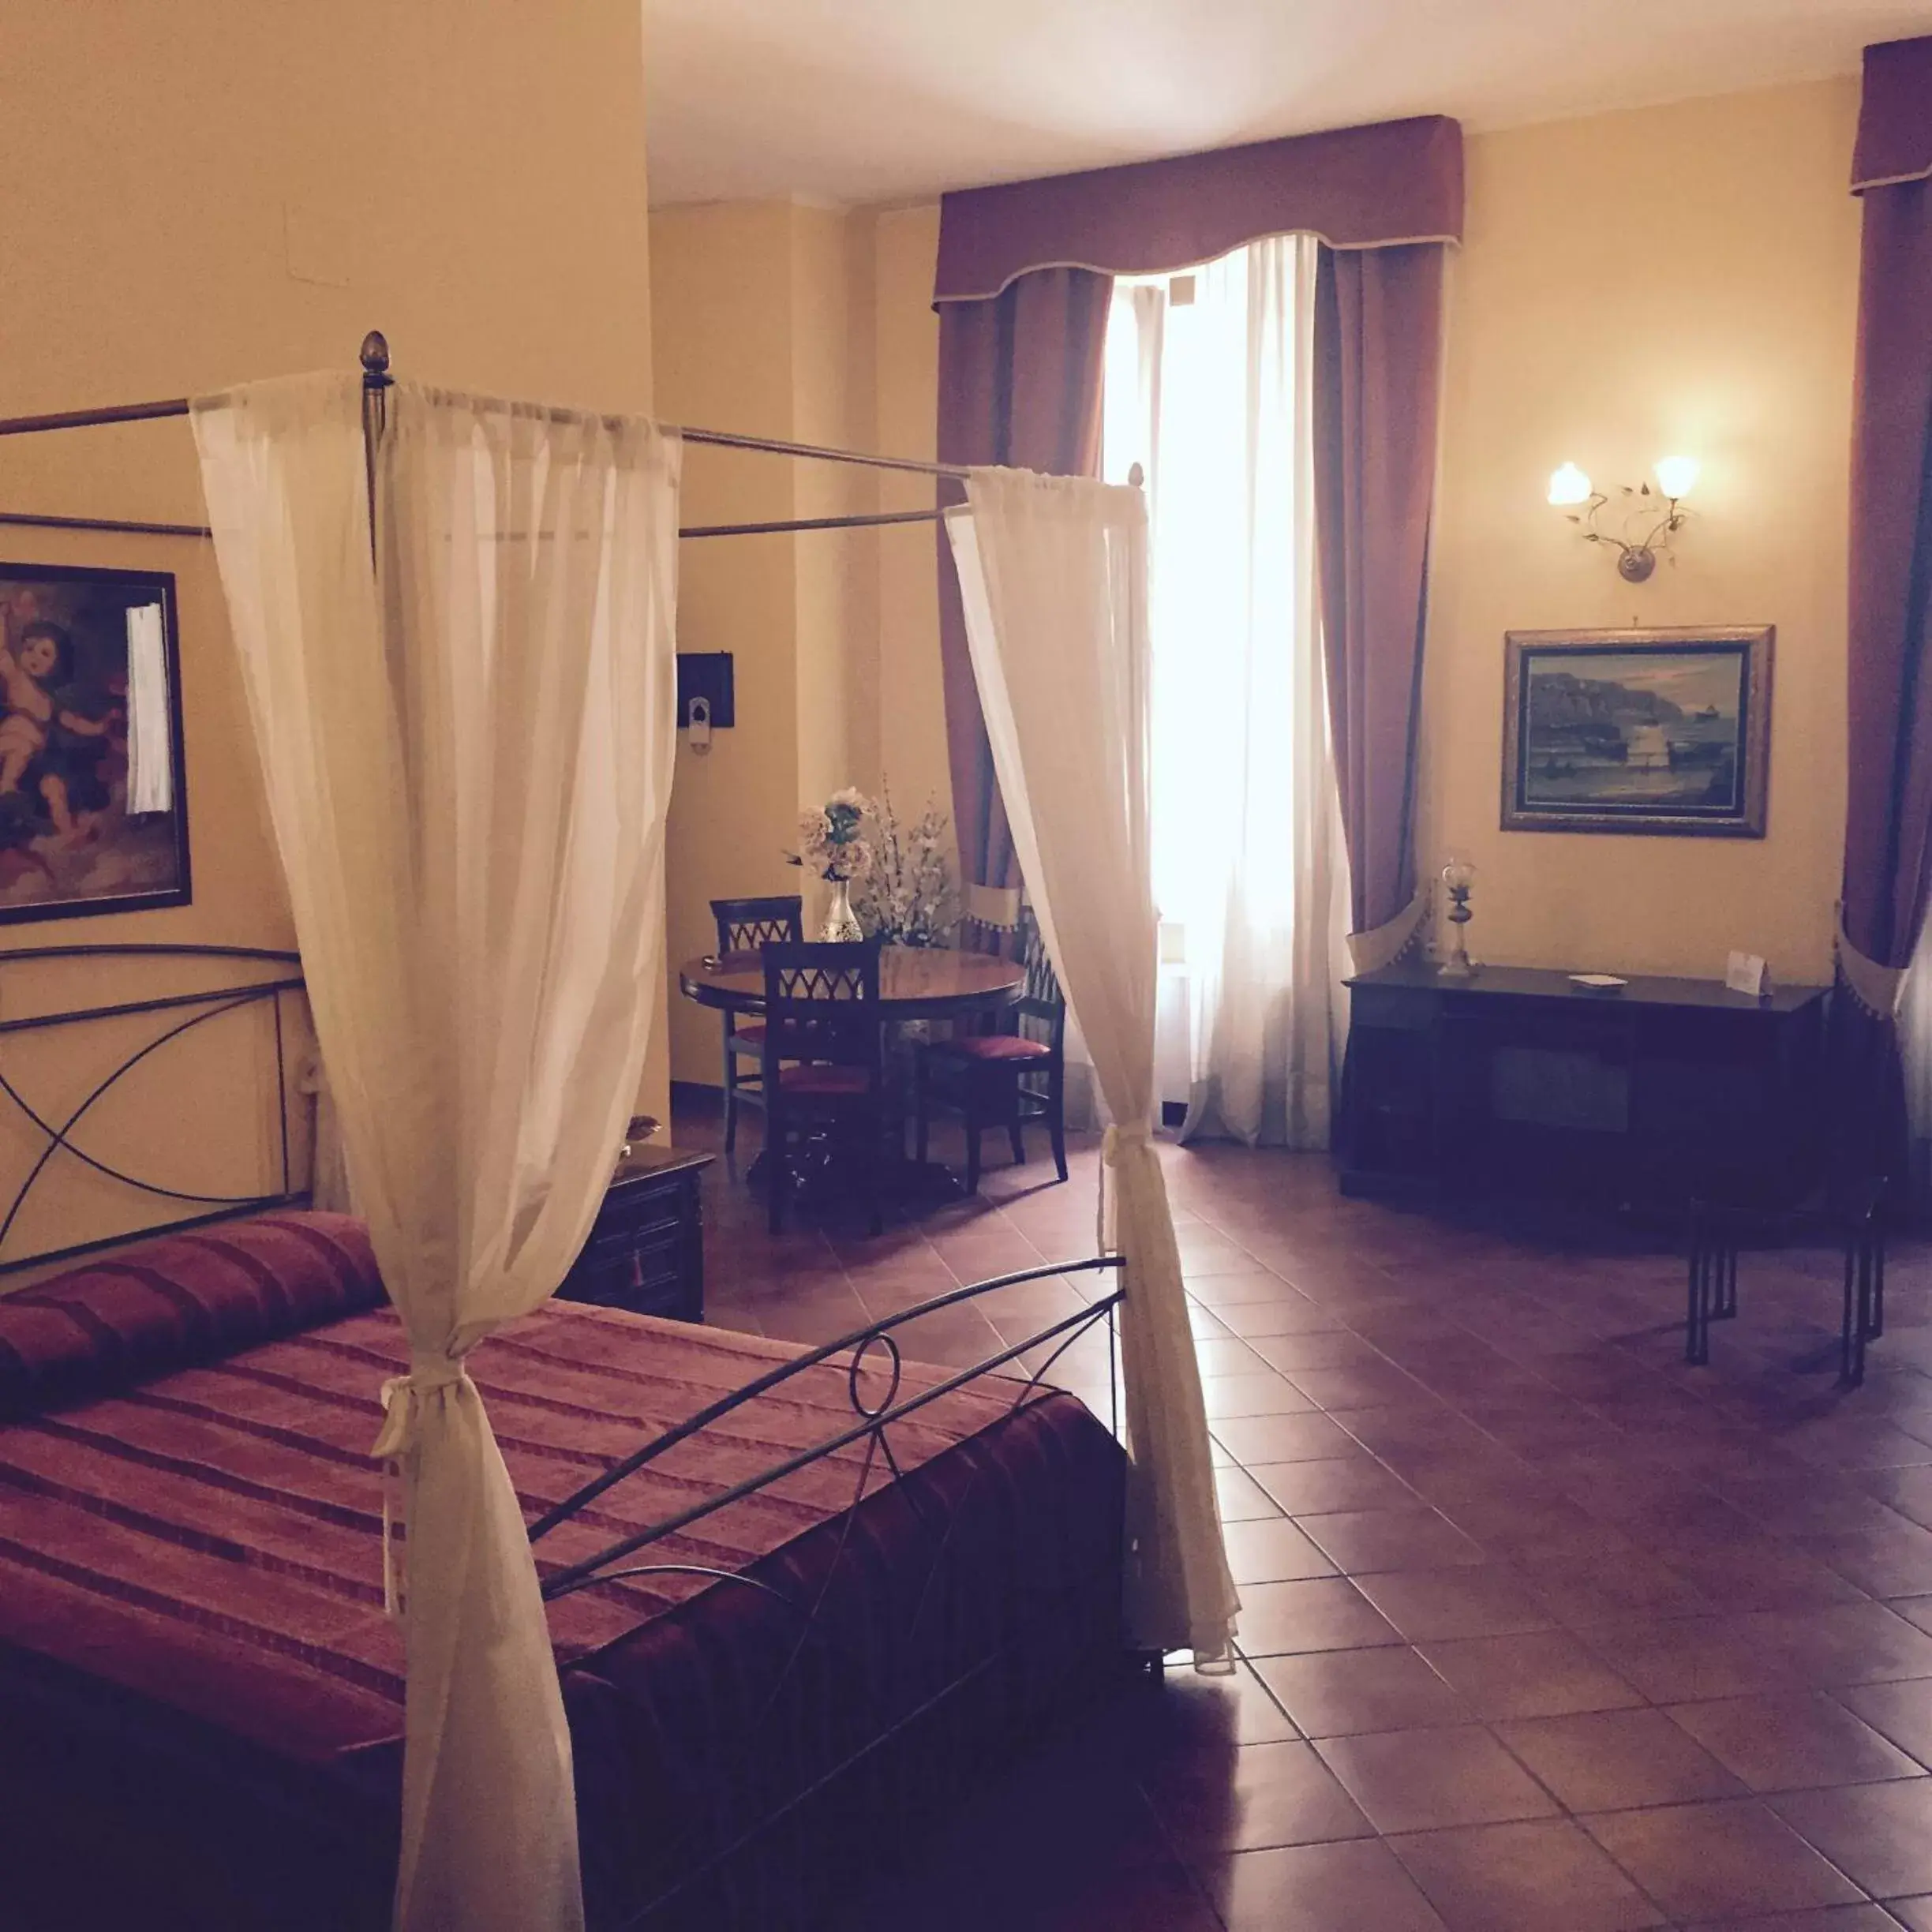 Day, Room Photo in Grand Hotel Capodimonte